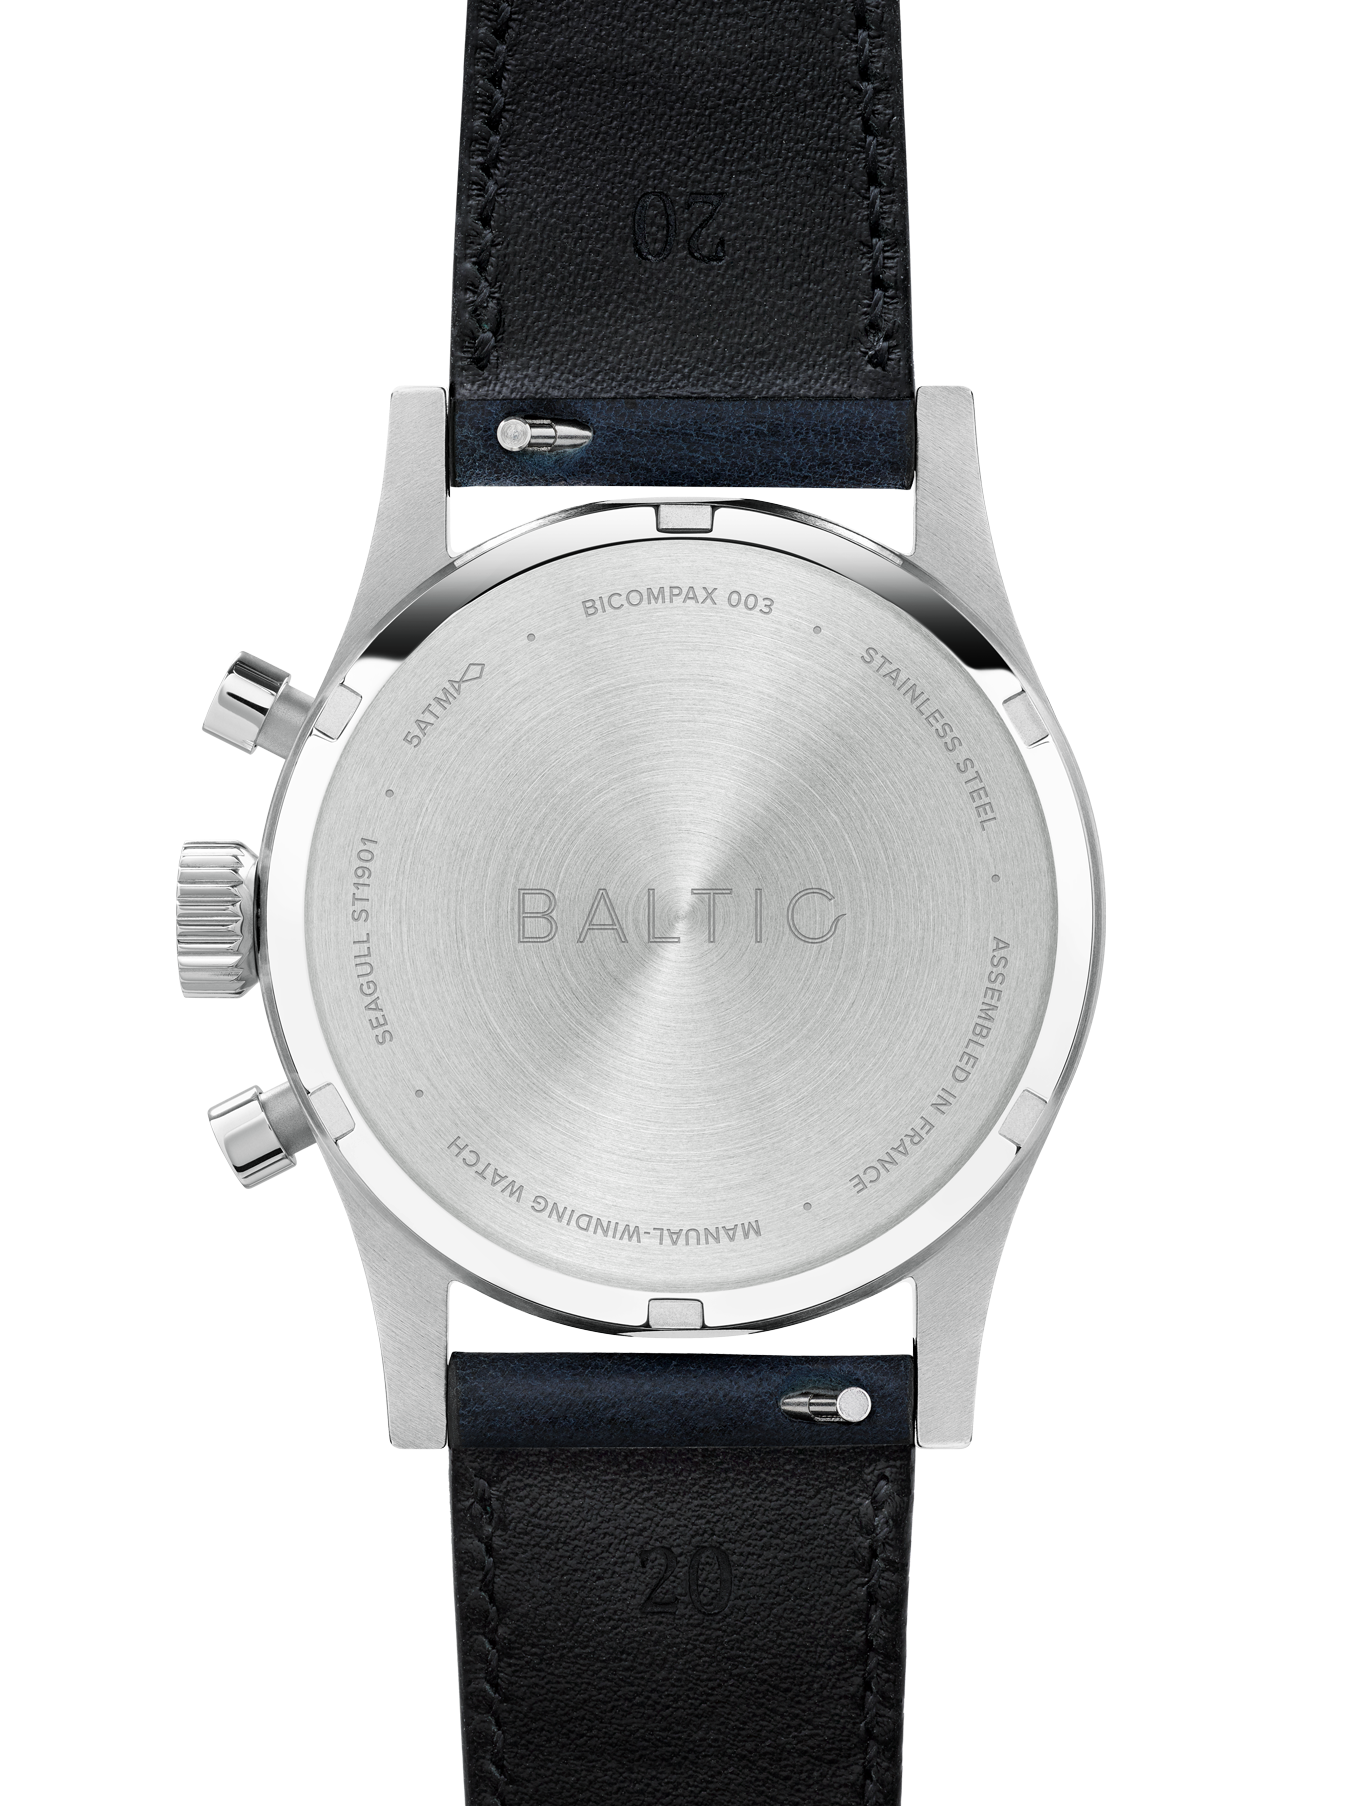 Baltic Bicompax 003 Salmon - Stitched Saffiano Black